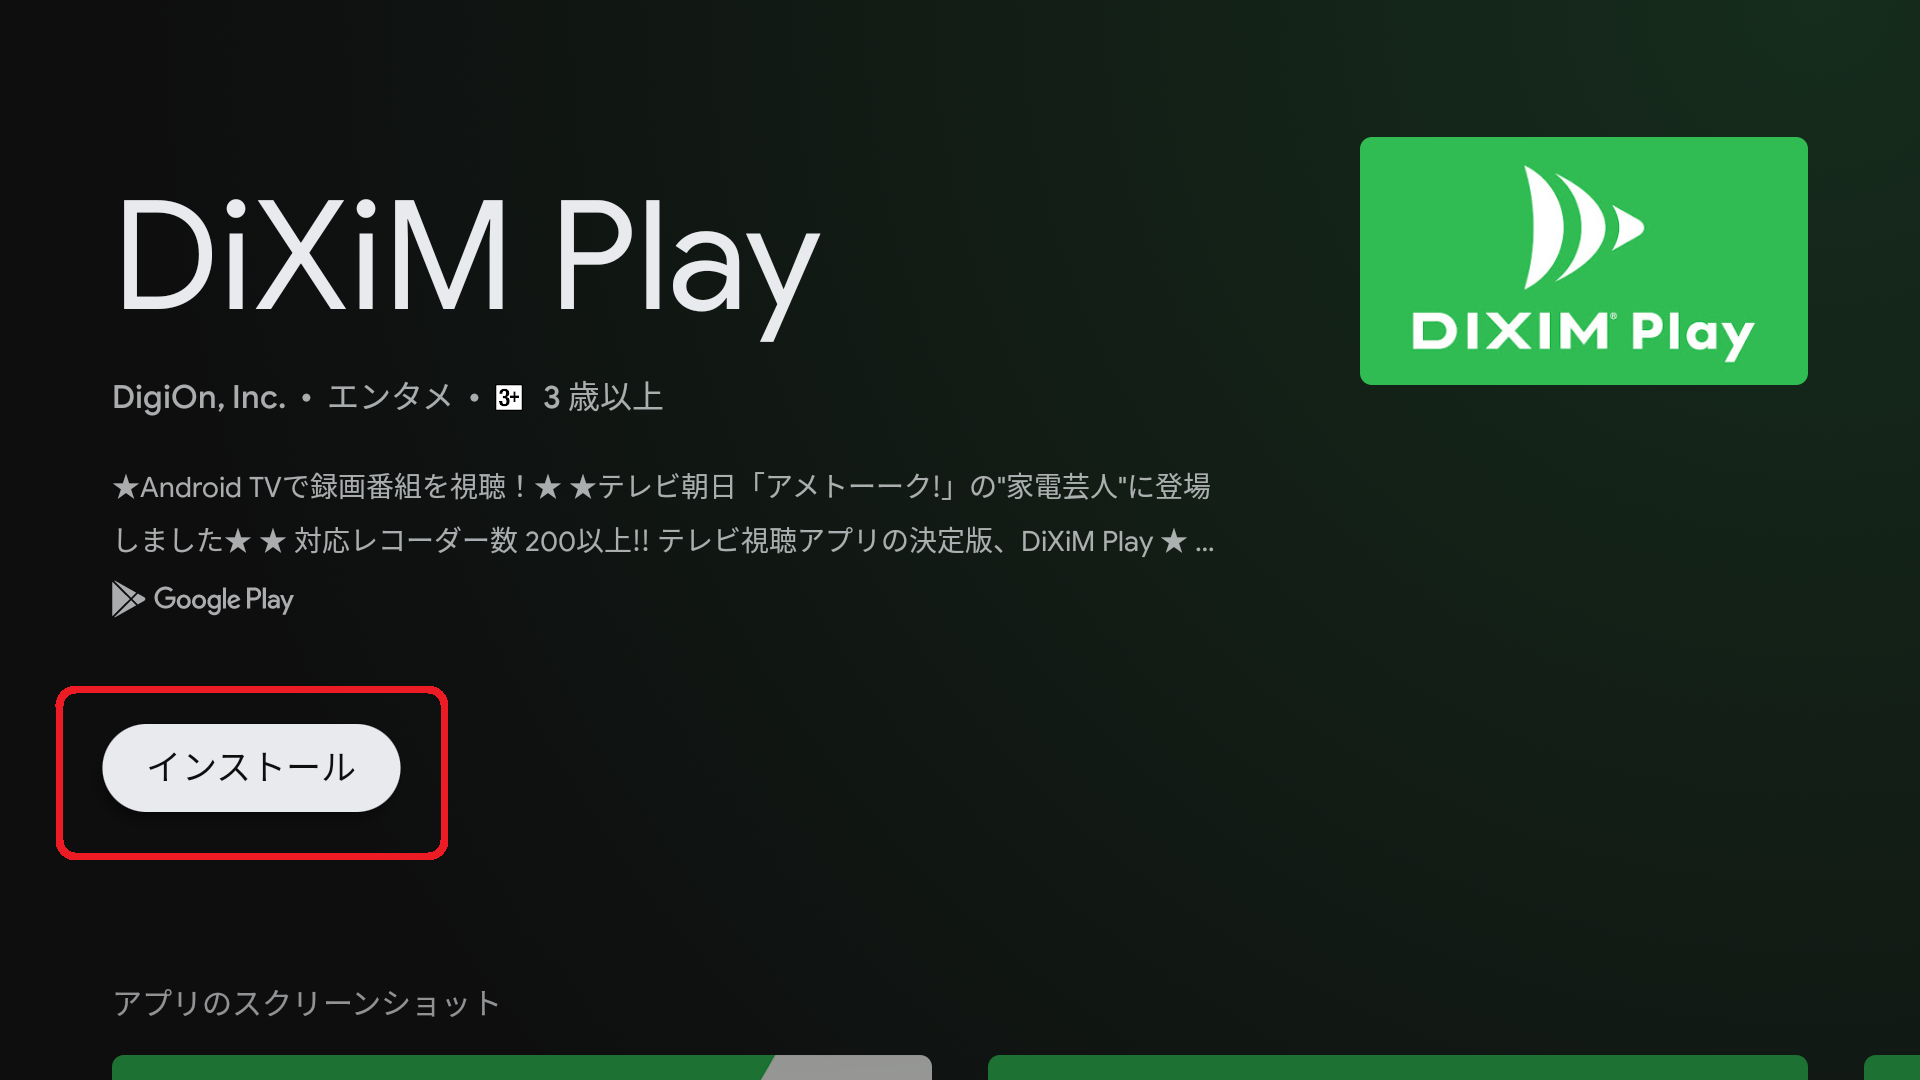 ３．「エンタメ」カテゴリから「DiXiM Play」 を探し出して選択し、インストールします。